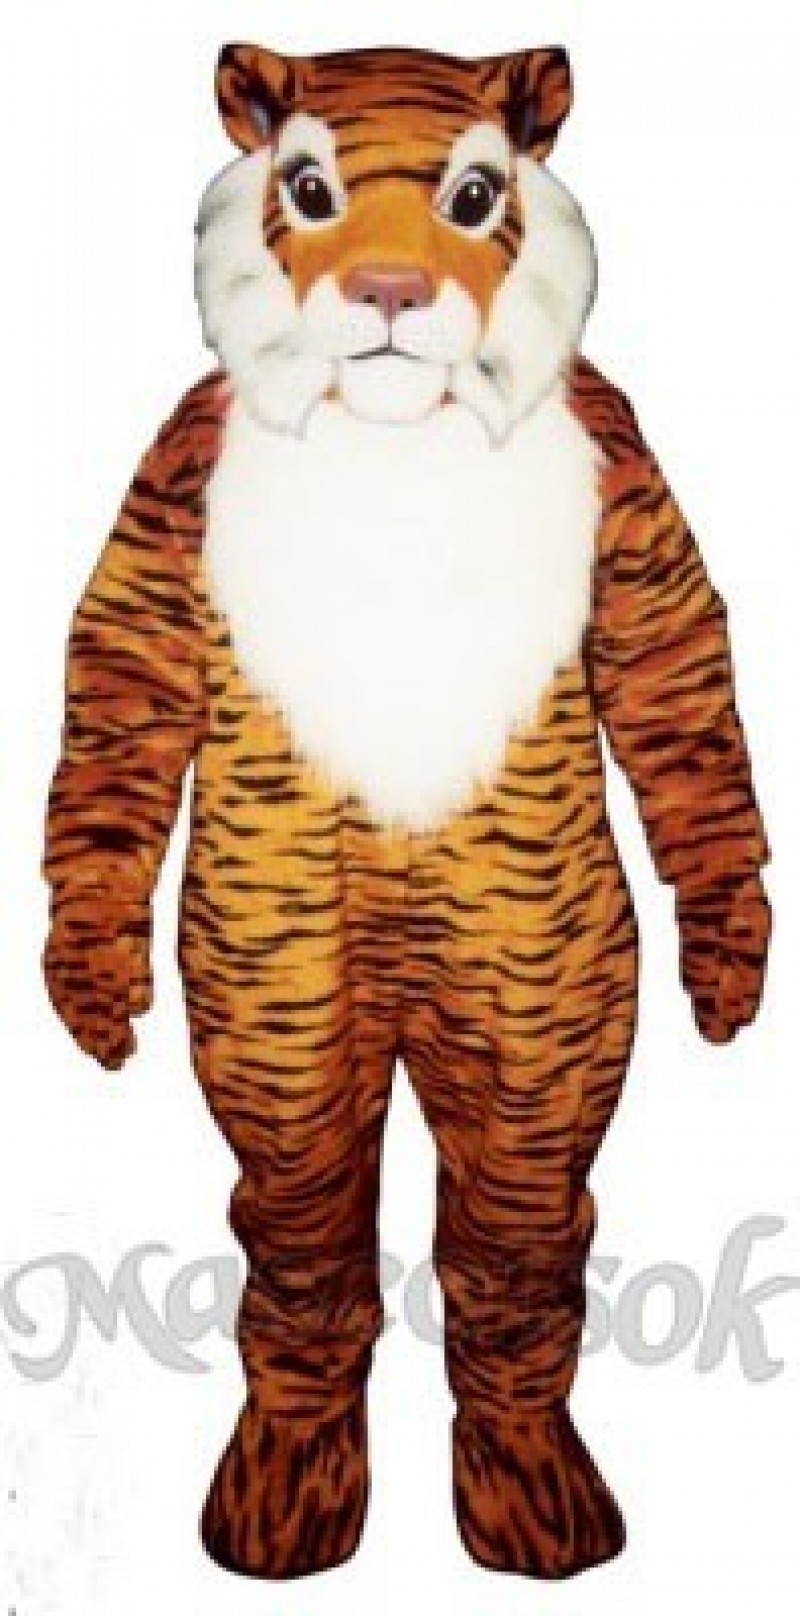 Cute George Tiger Mascot Costume